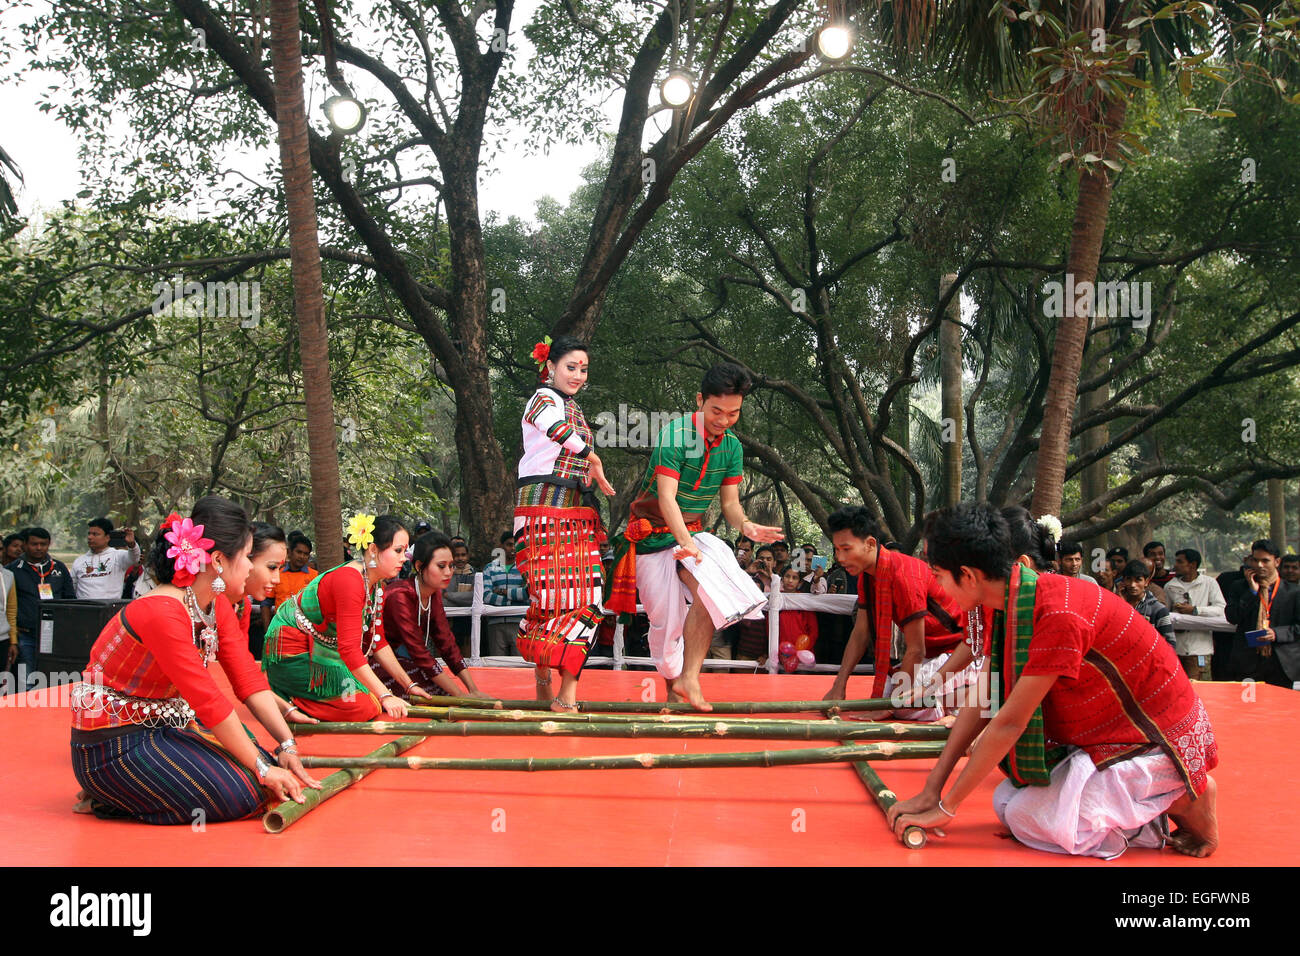 Dezember 2014 - Tribal Menschen ihre traditionellen Tanz in einem Kulturfestival in Dhaka. Stockfoto